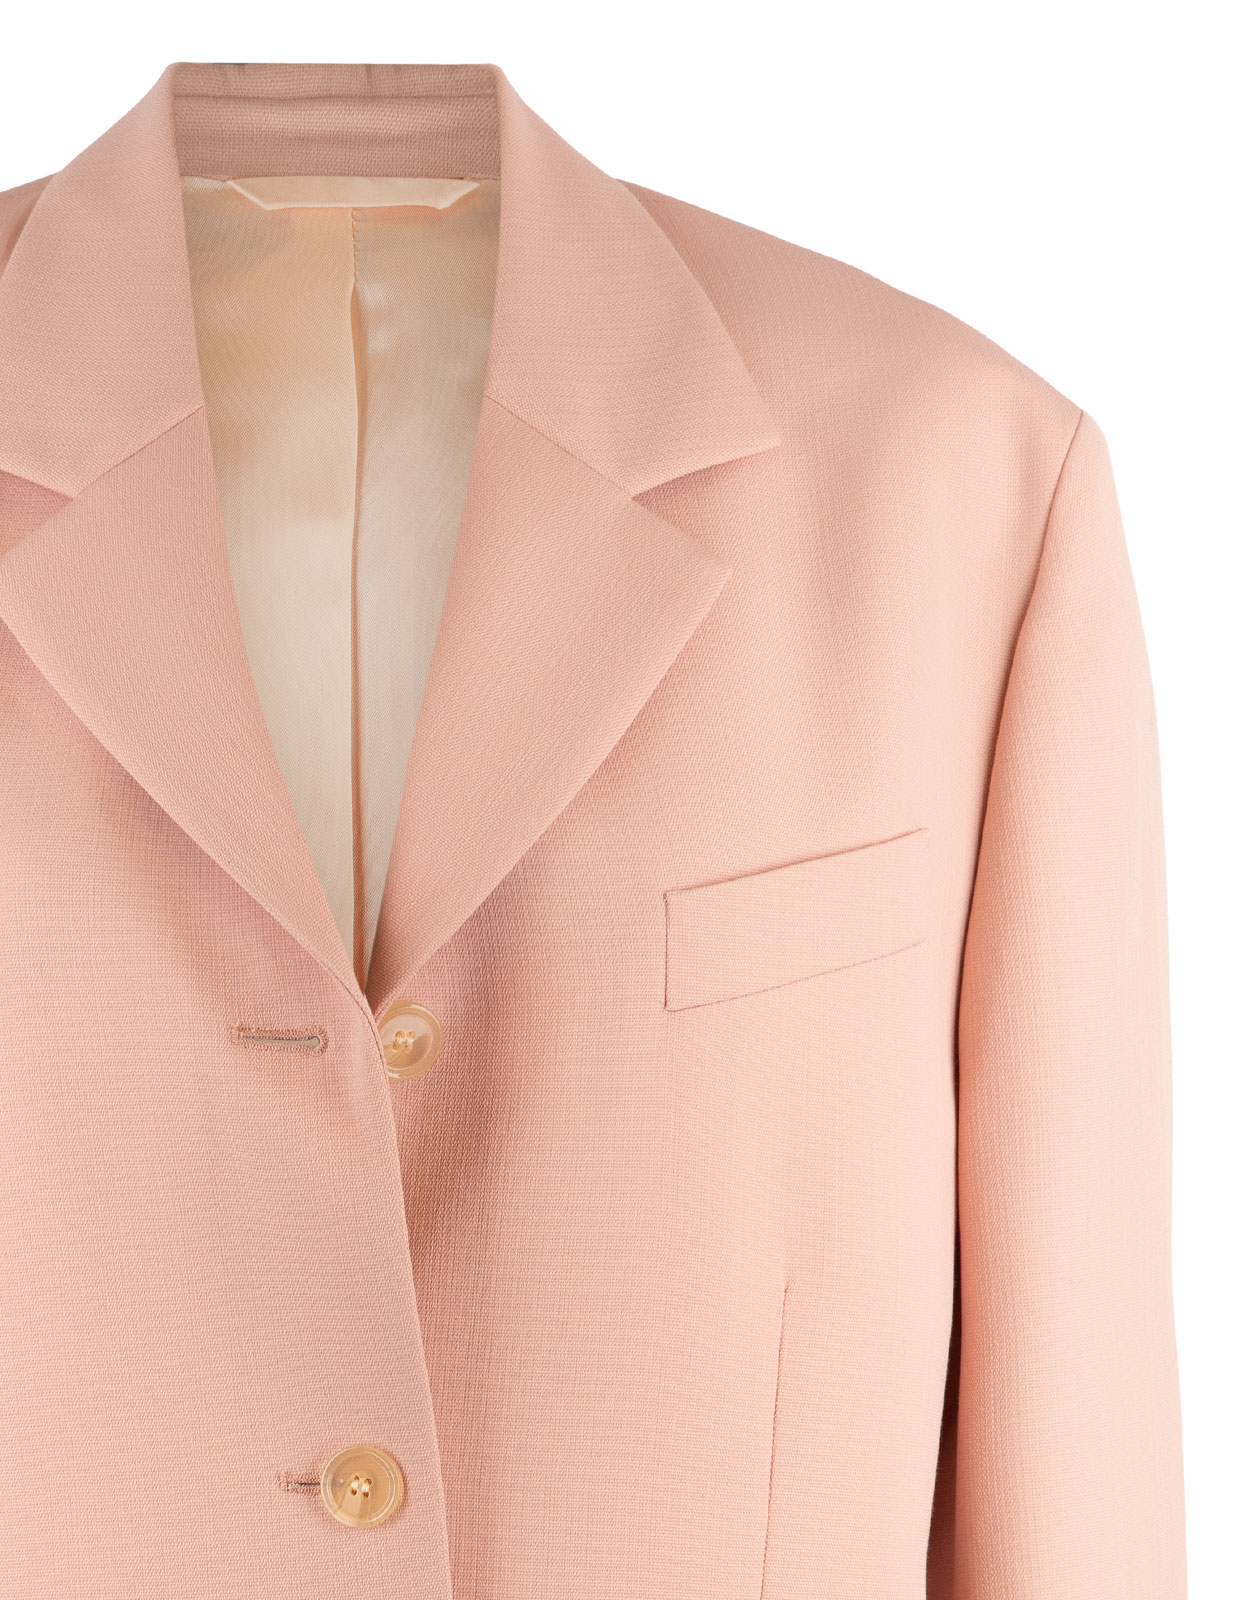 Suit Jacket Powder Pink